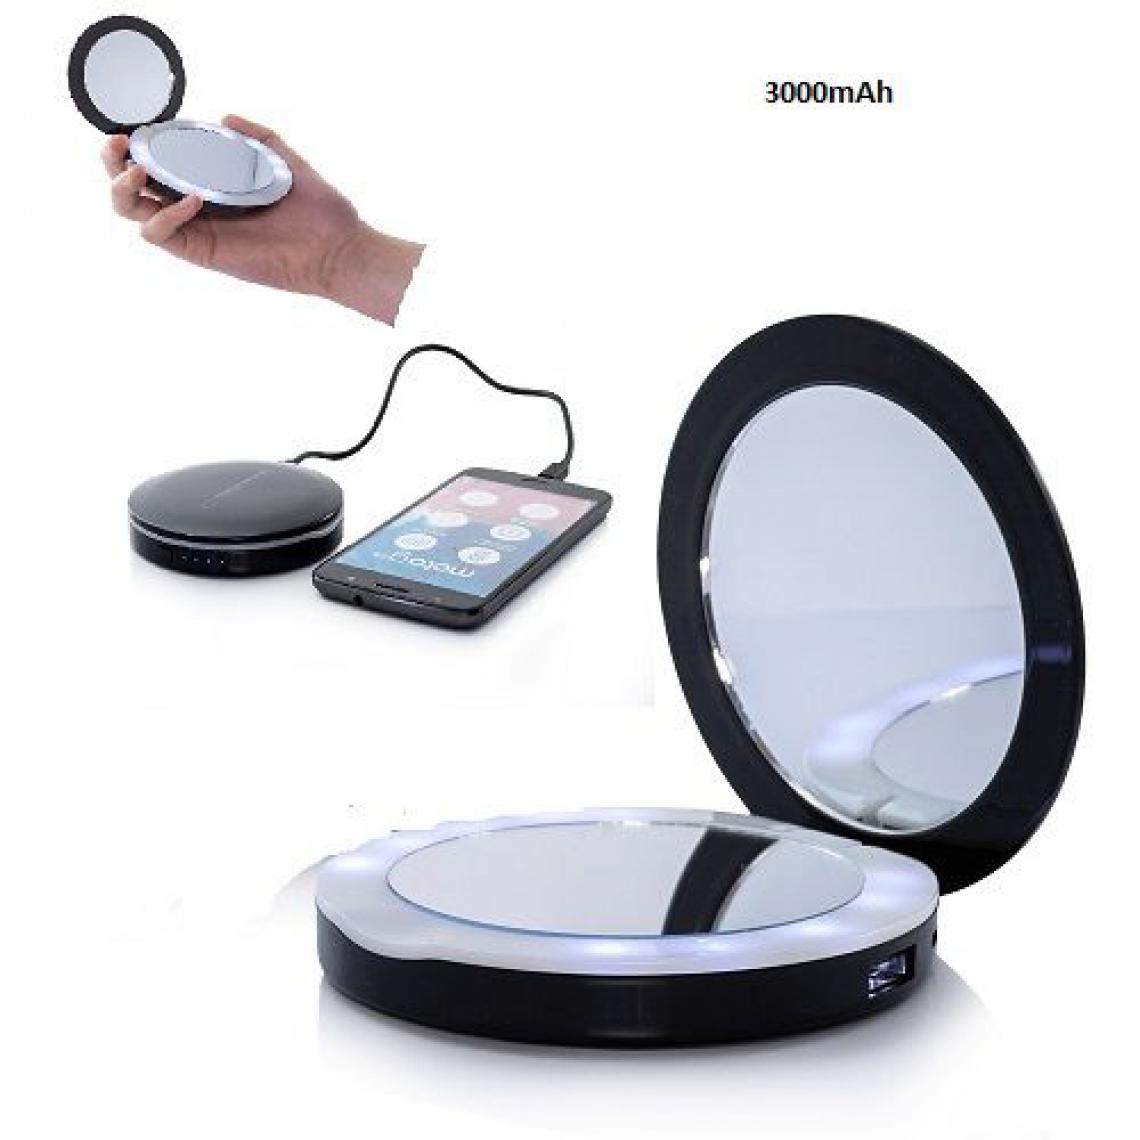 Ozzzo - Chargeur batterie externe miroir led 3000mAh noir ozzzo pour Smartphone et Tablette - Autres accessoires smartphone